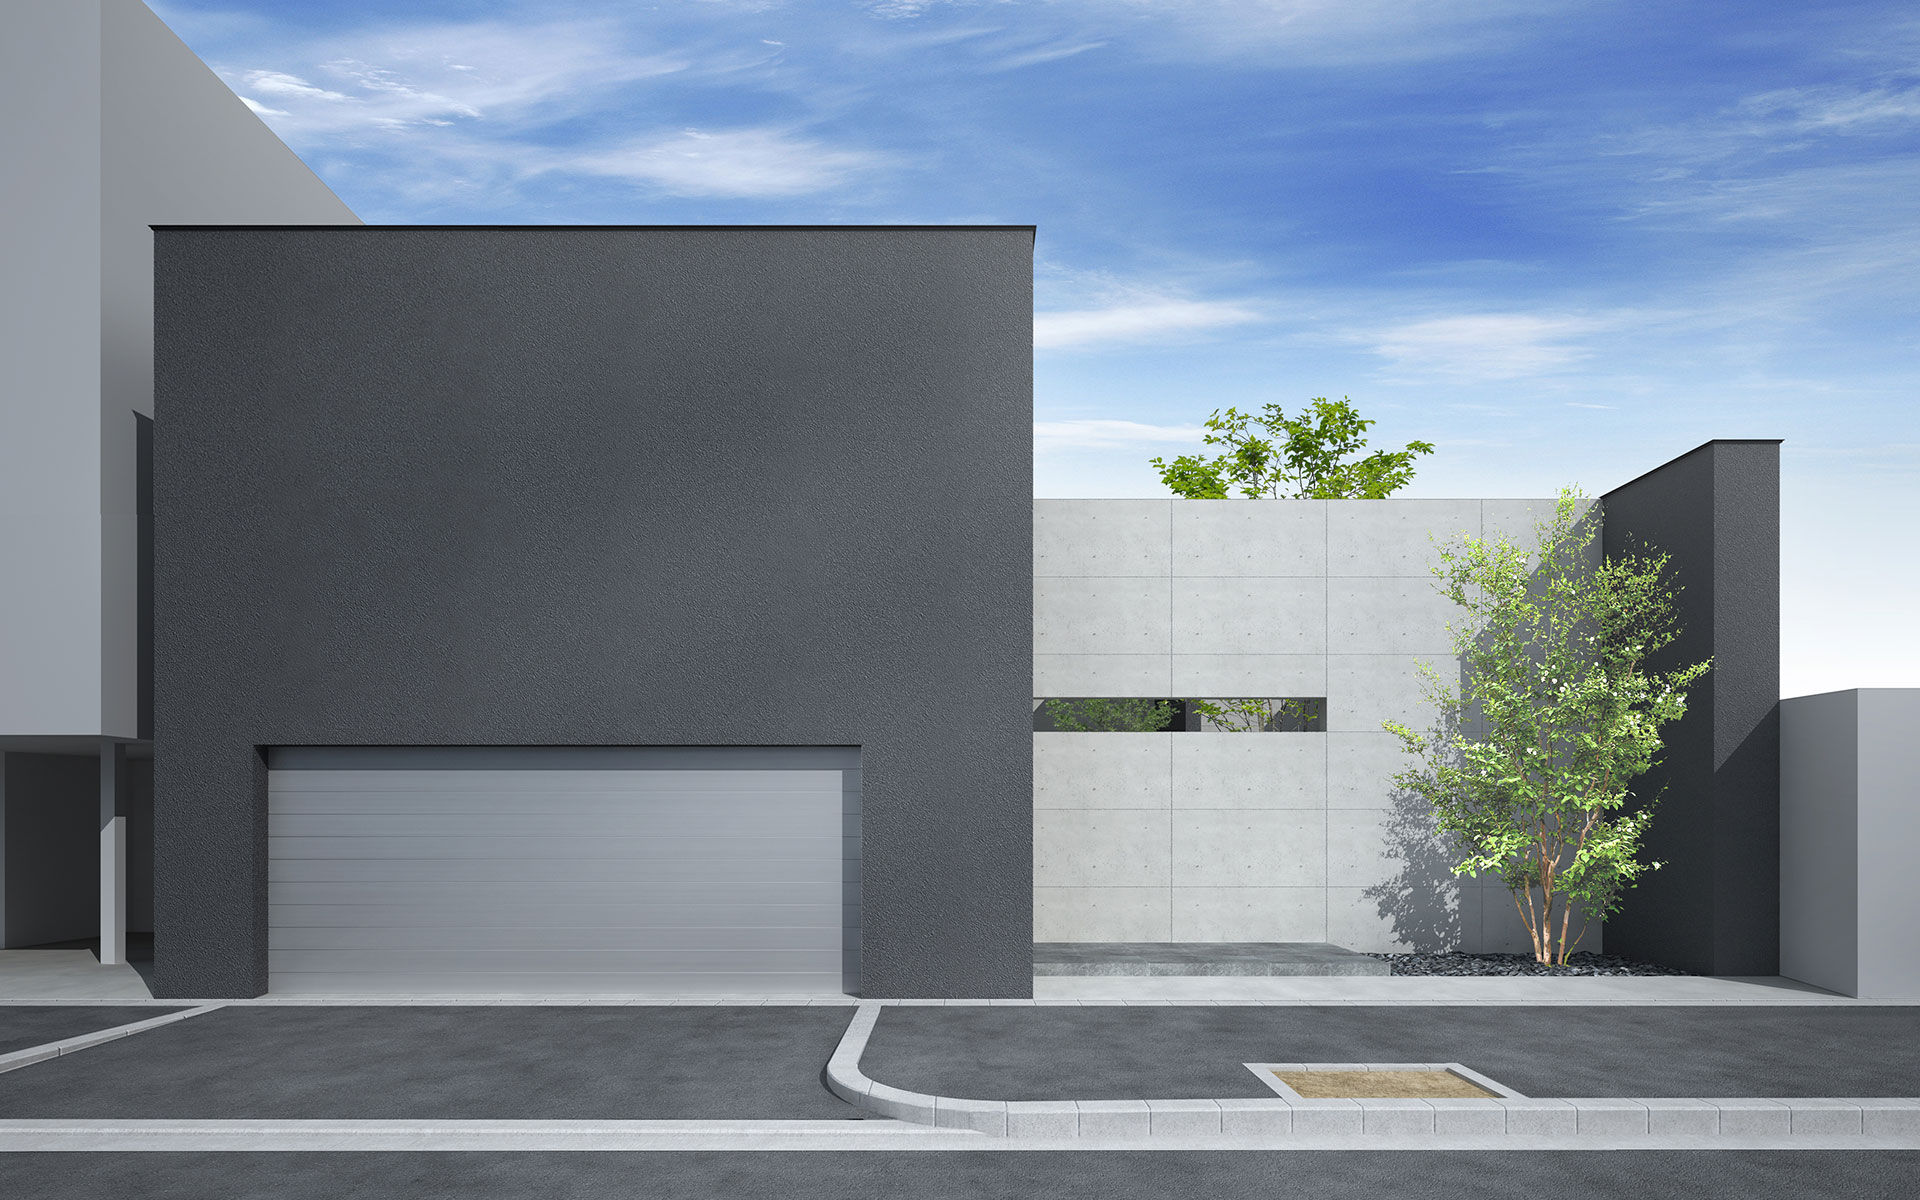 大阪府大阪市に計画中のコートハウスの外観イメージ